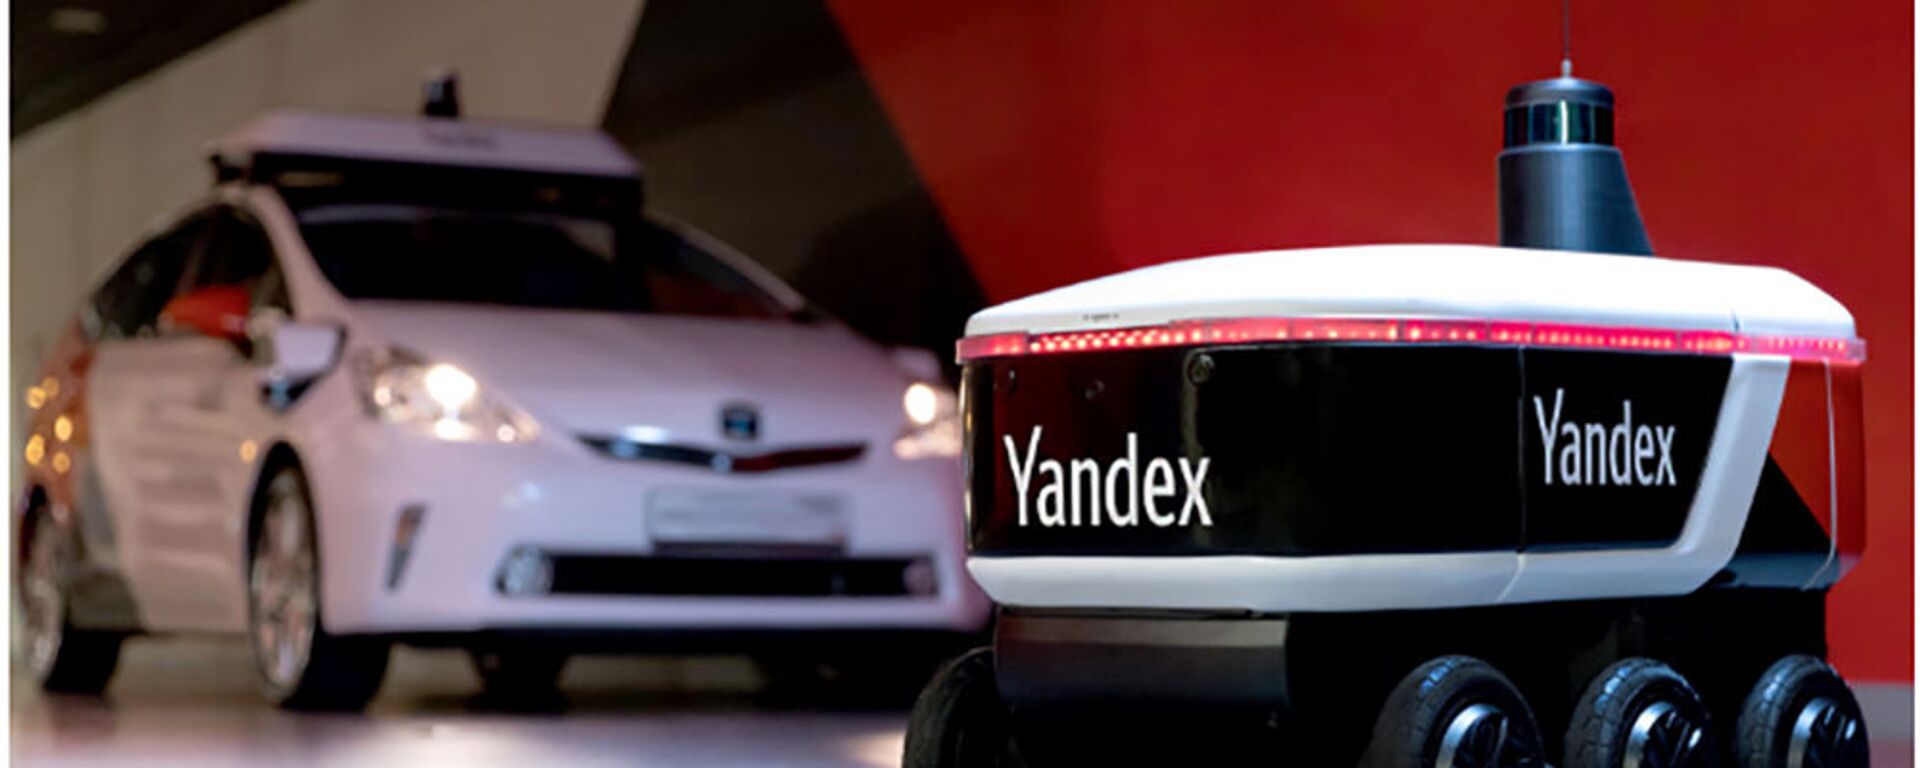 Yandex giới thiệu robot không người lái chuyển phát nhanh. - Sputnik Việt Nam, 1920, 06.08.2020